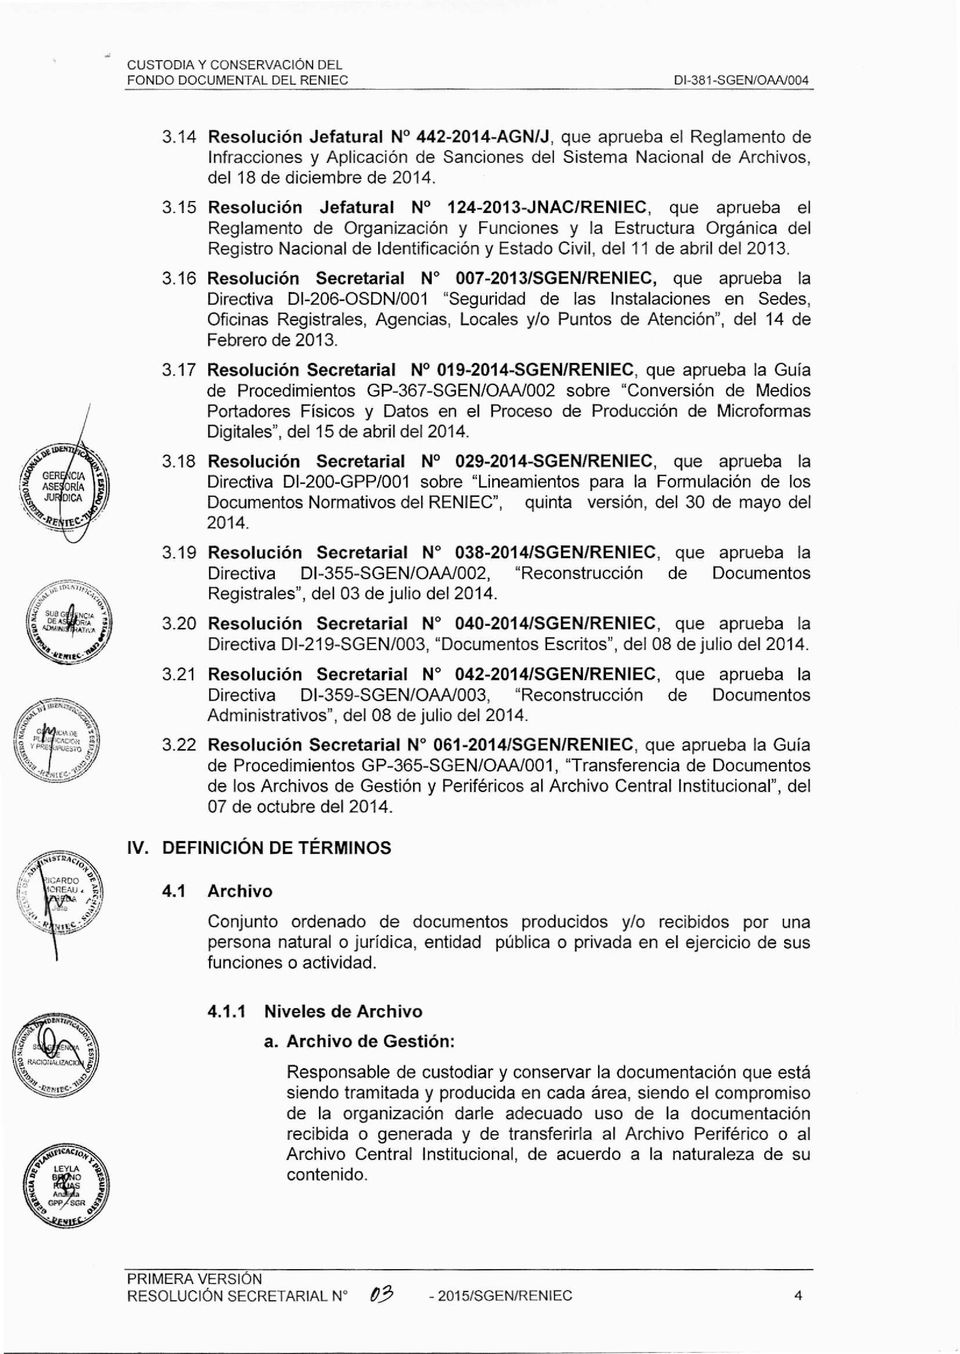 15 Resolución Jefatural N 124-2013-JNAC/RENIEC, que aprueba el Reglamento de Organización y Funciones y la Estructura Orgánica del Registro Nacional de Identificación y Estado Civil, del 11 de abril